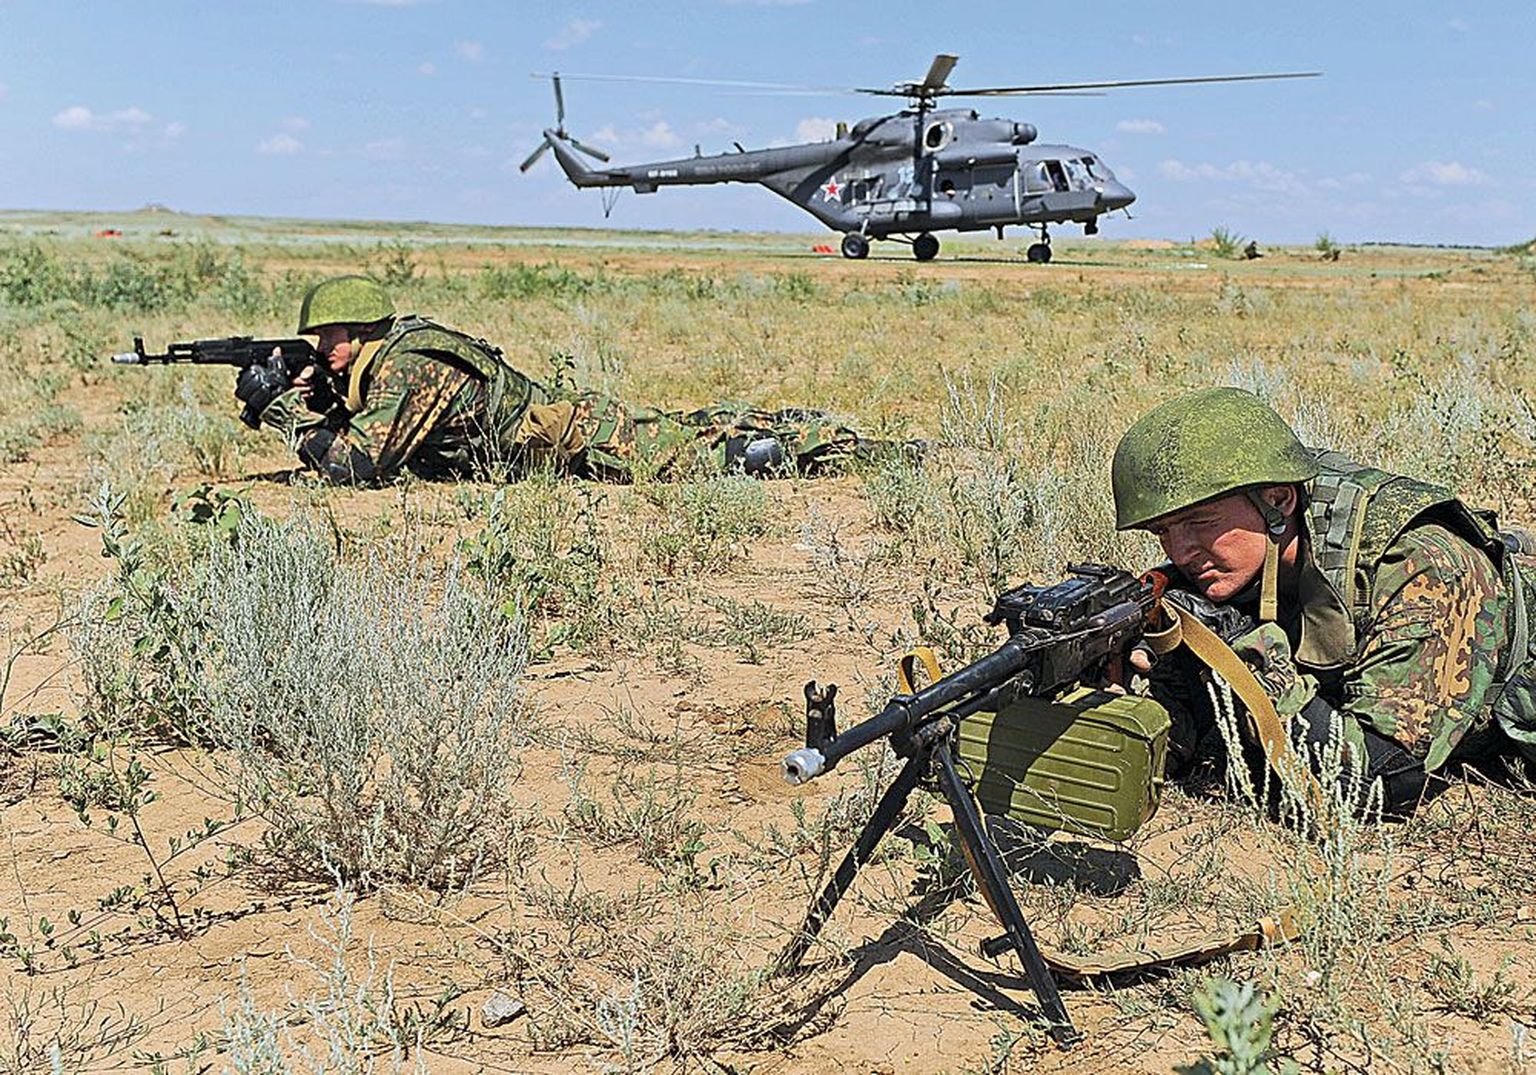 Venemaa ootamatud sõjalised õppused, mis on viimasel ajal järjest sagedasemaks muutunud, tekitavad naabrites muret. Pildil harjutavad sõdurid Venemaa Lõuna sõjaväeringkonnas Prudboi polügoonil.